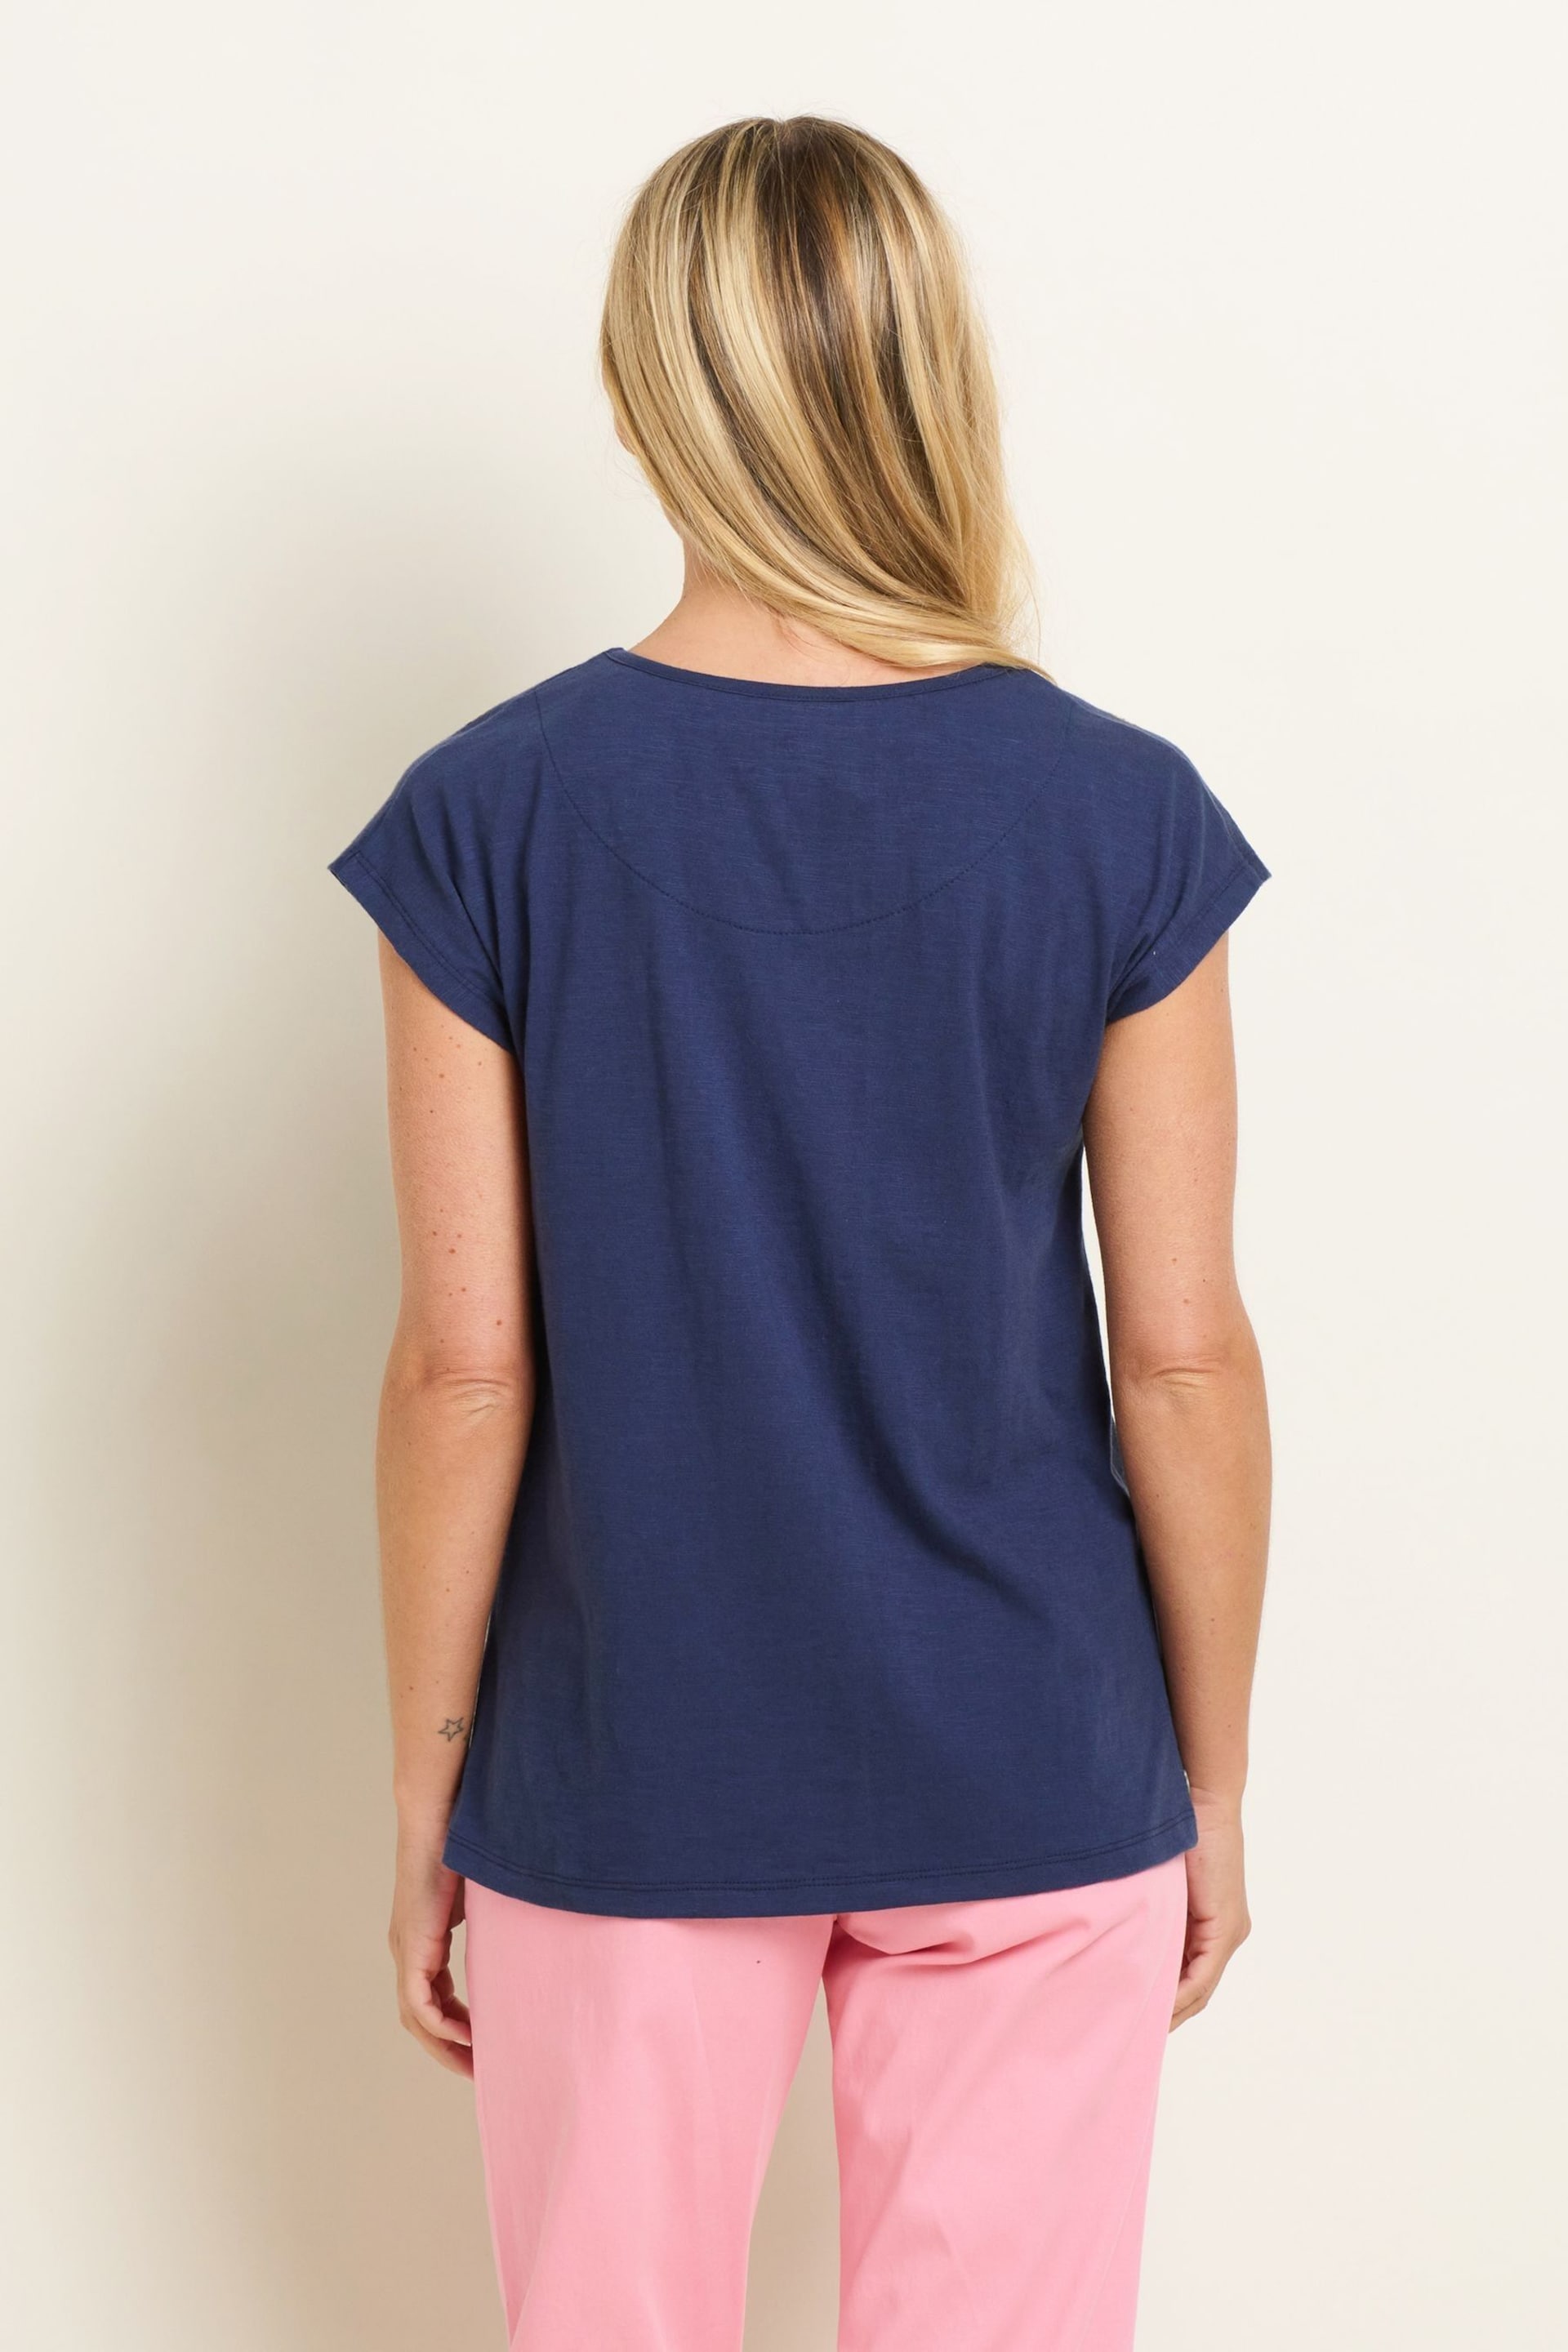 Brakeburn Blue Mez Embroidered T-Shirt - Image 2 of 5